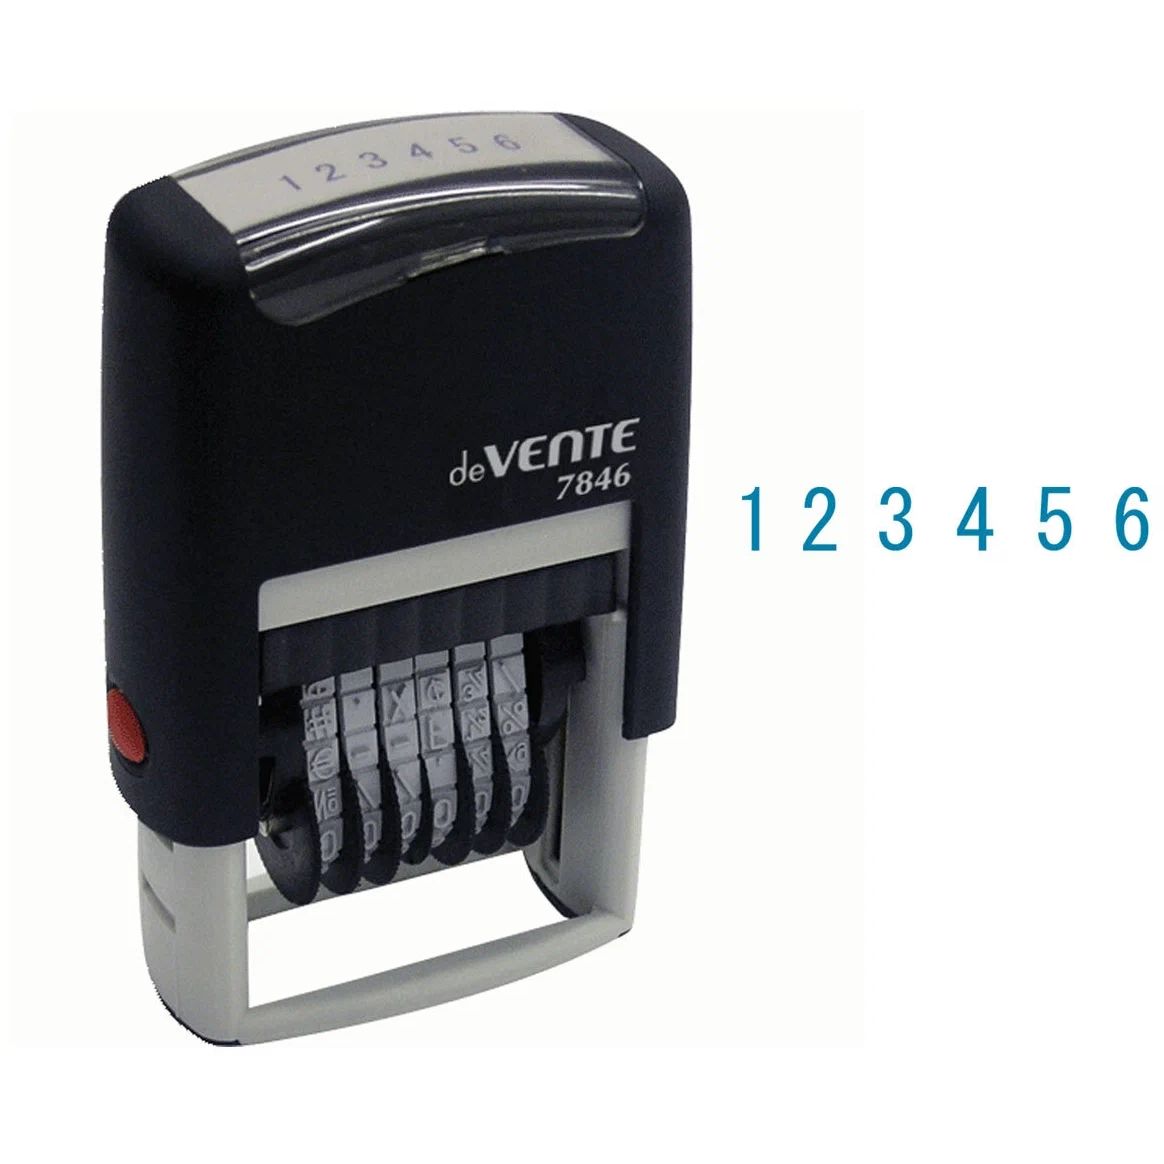 Нумератор автоматический deVente 6-ти разрядный 4 мм, 7846, блистер